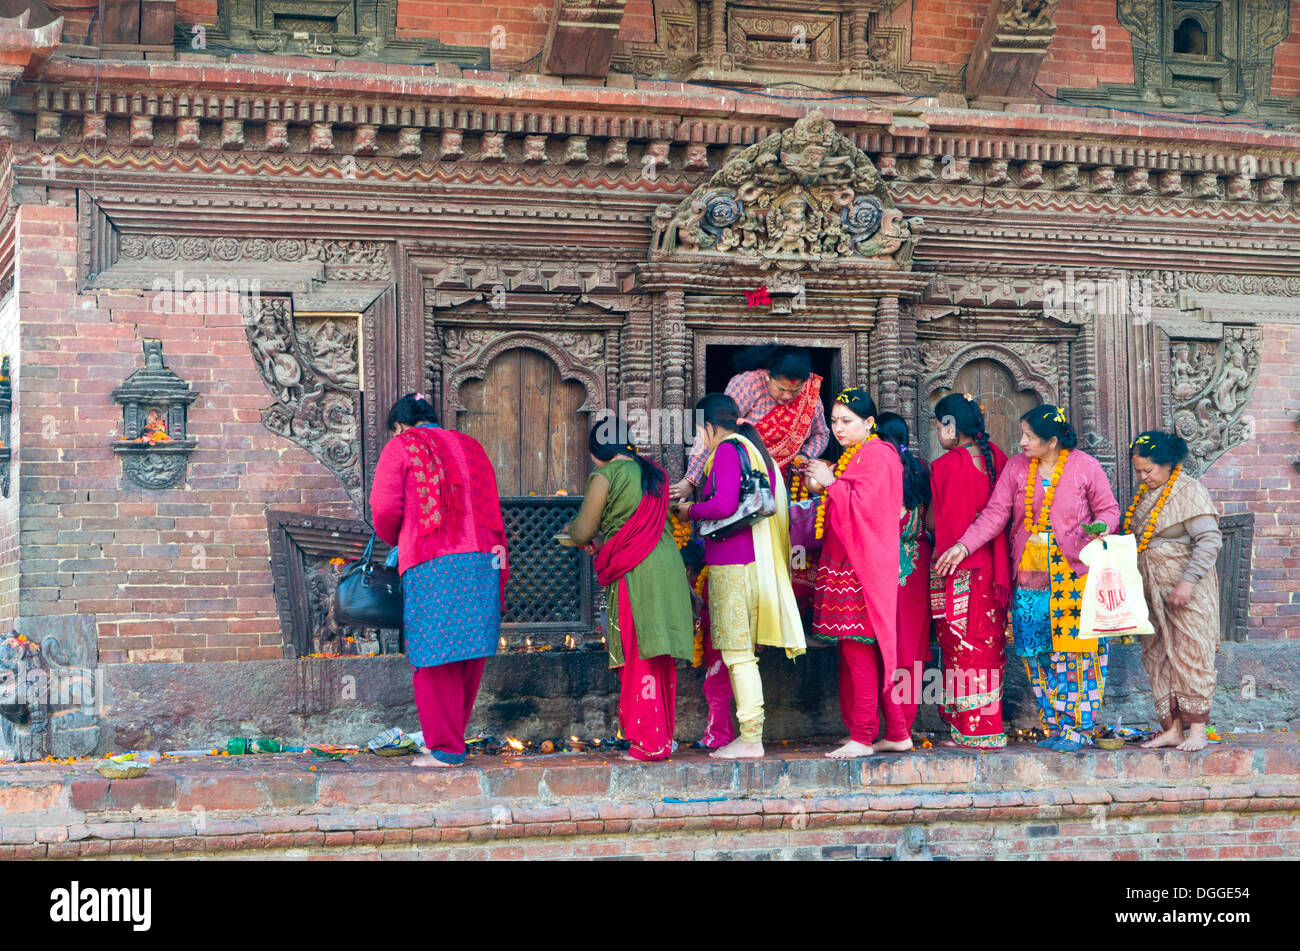 Des femmes faisant la queue pour faire des offrandes dans un temple à Patan Durbar Square, Patan, Lalitpur, District Zone Bagmati, Népal Banque D'Images